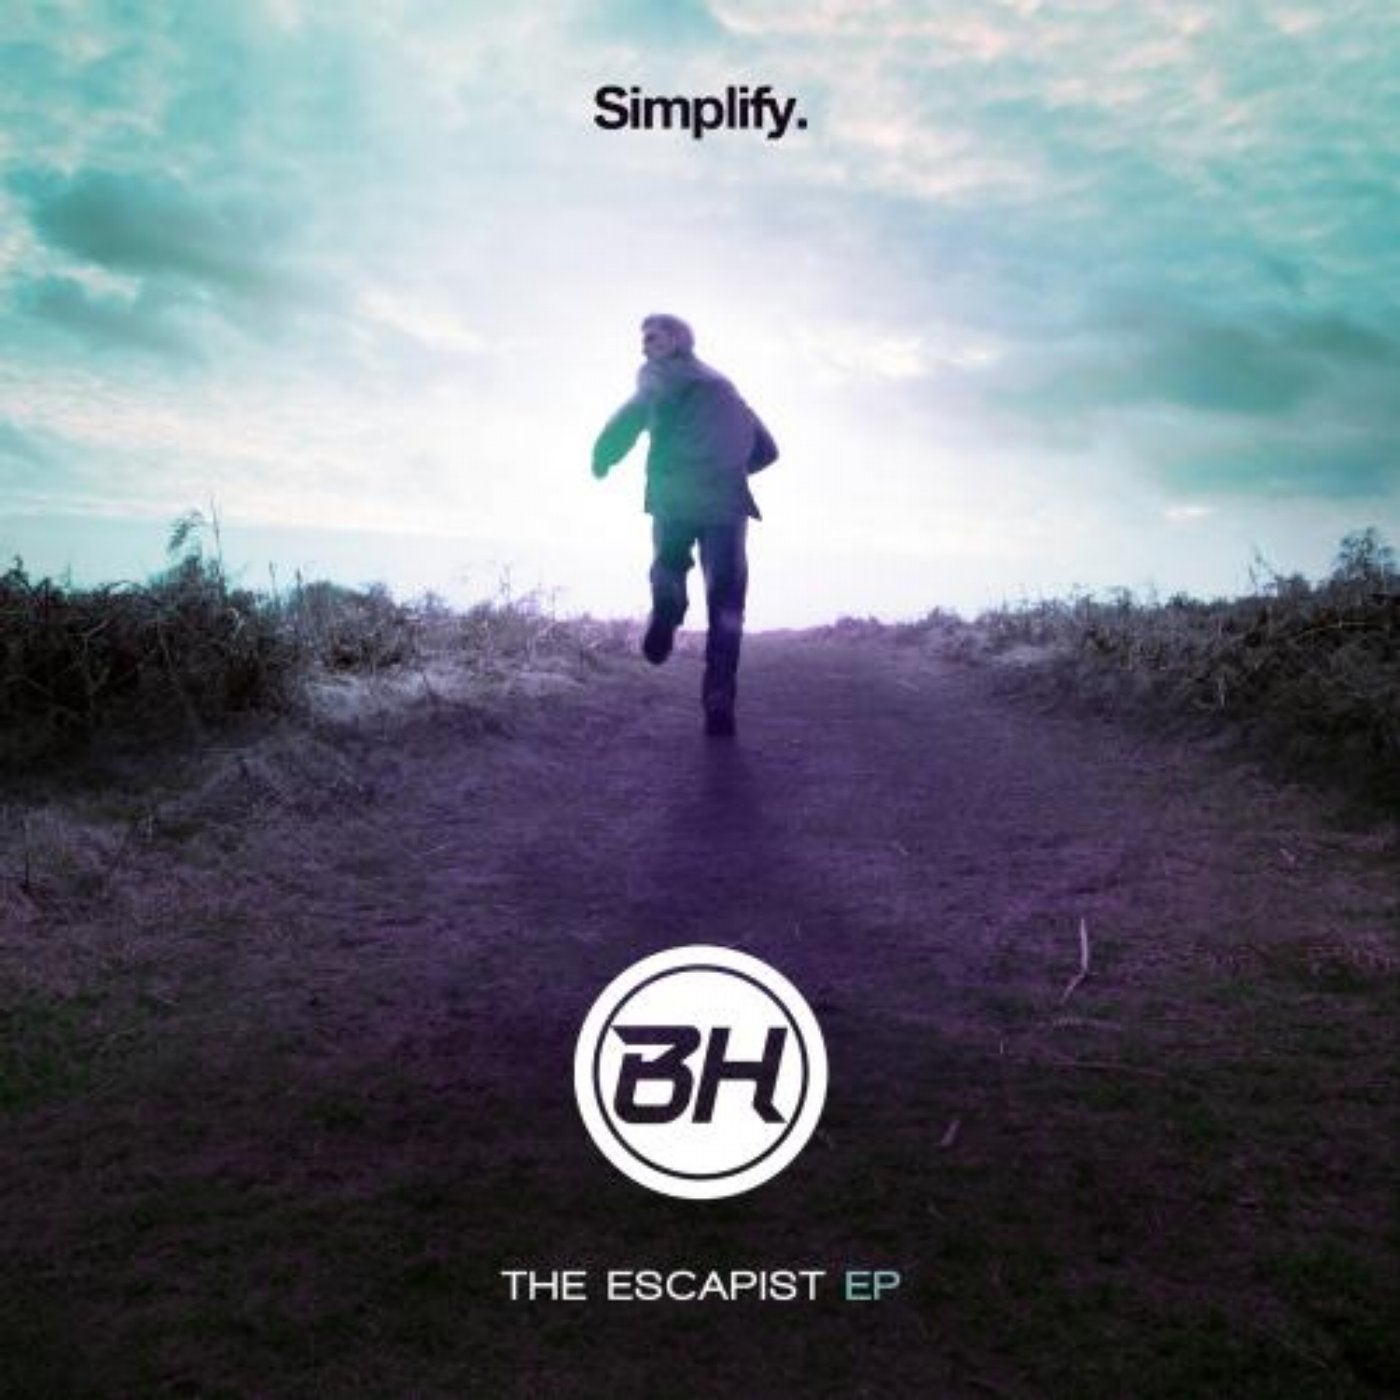 The Escapist EP